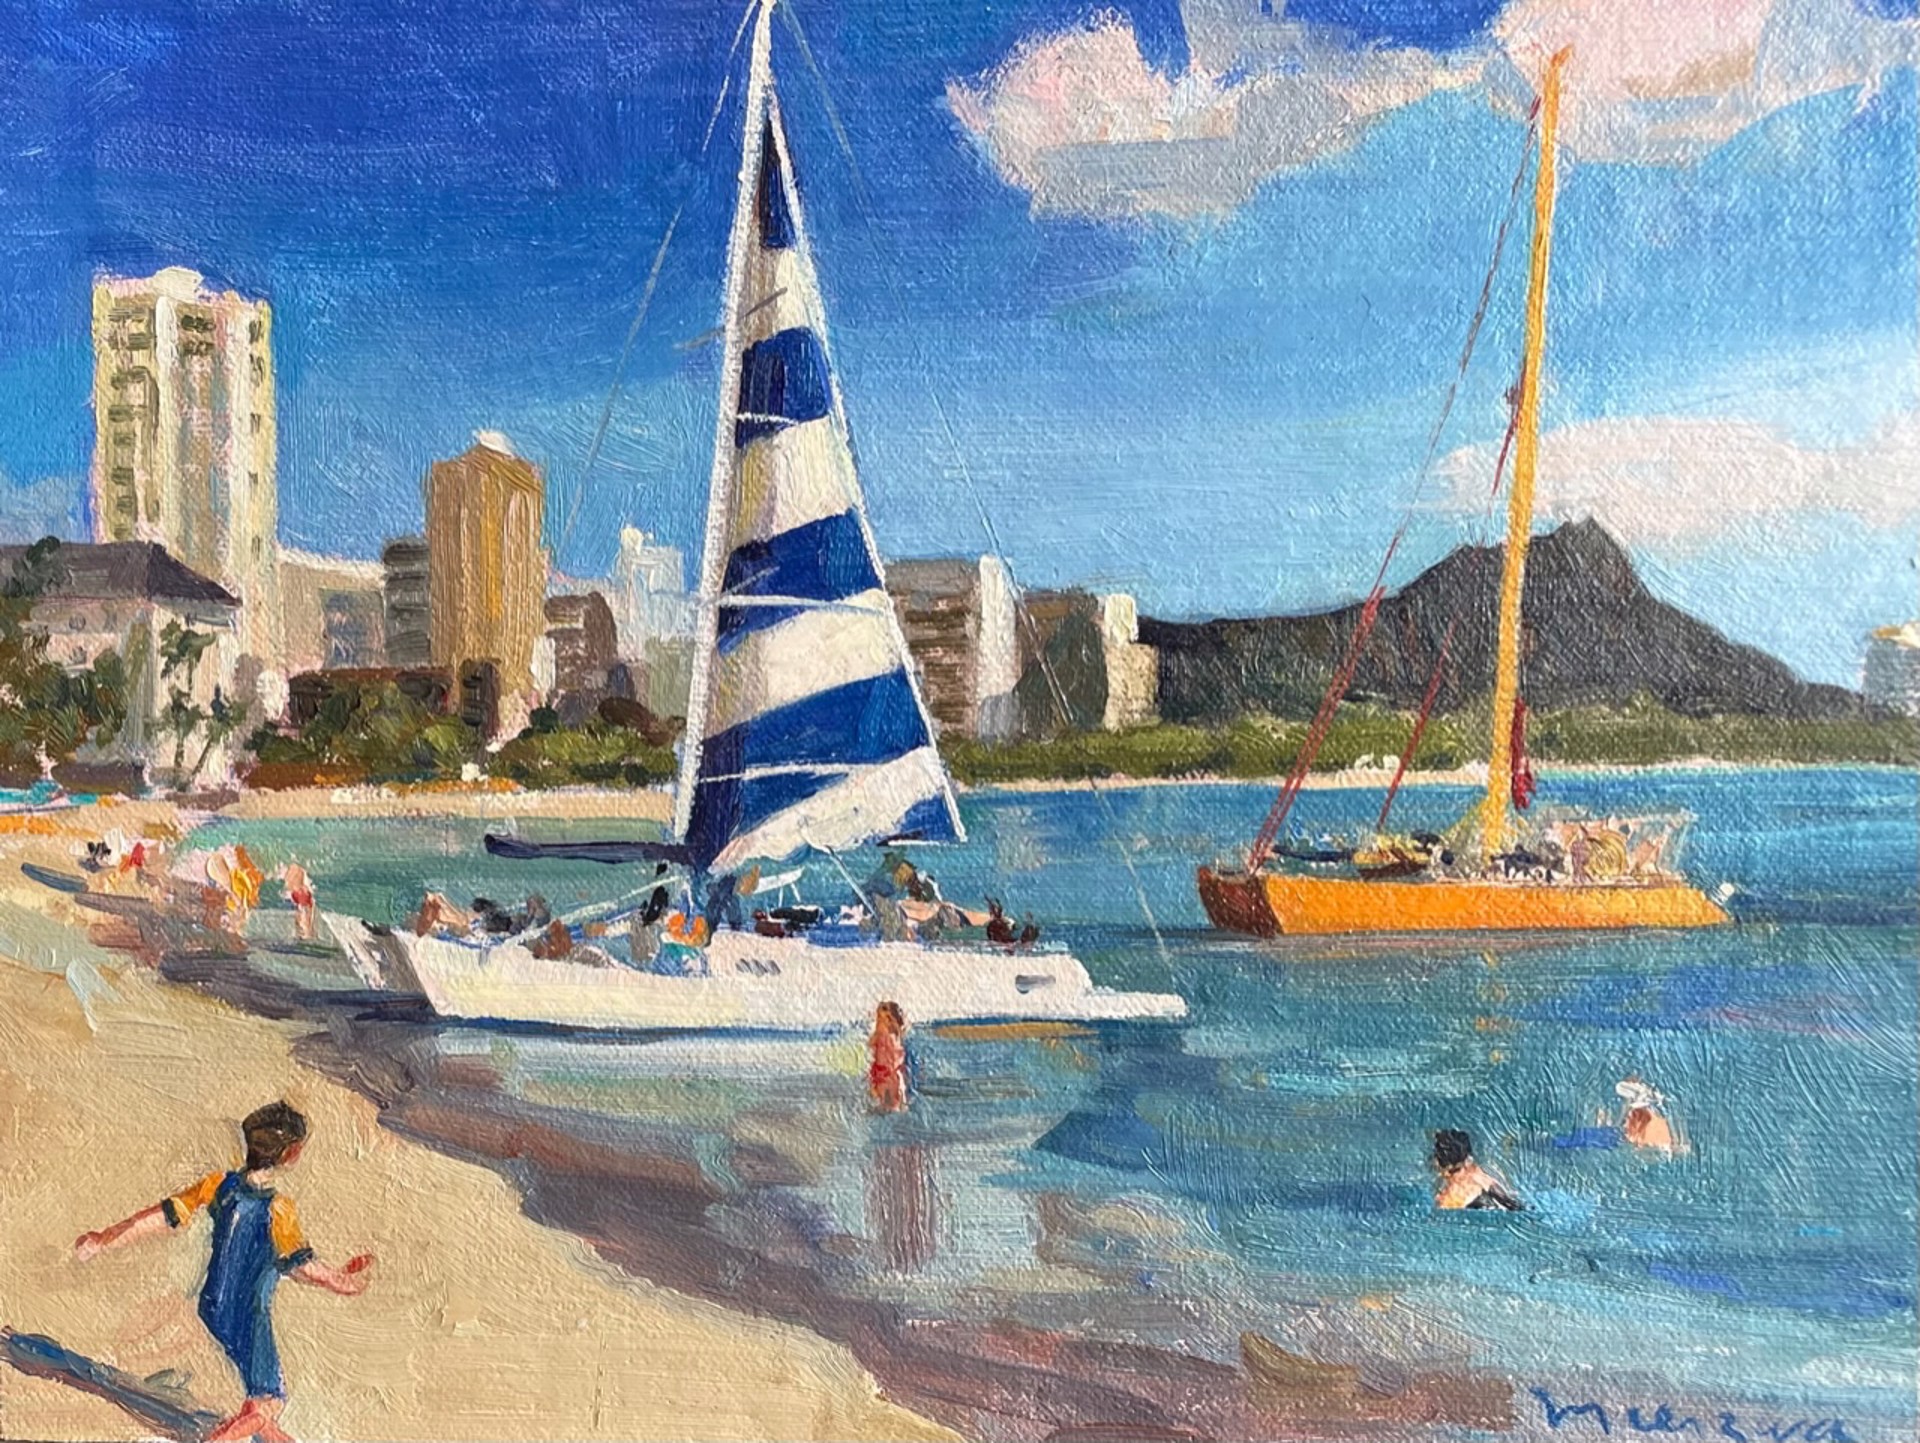 Waikiki Beach by Adrienne Mierzwa